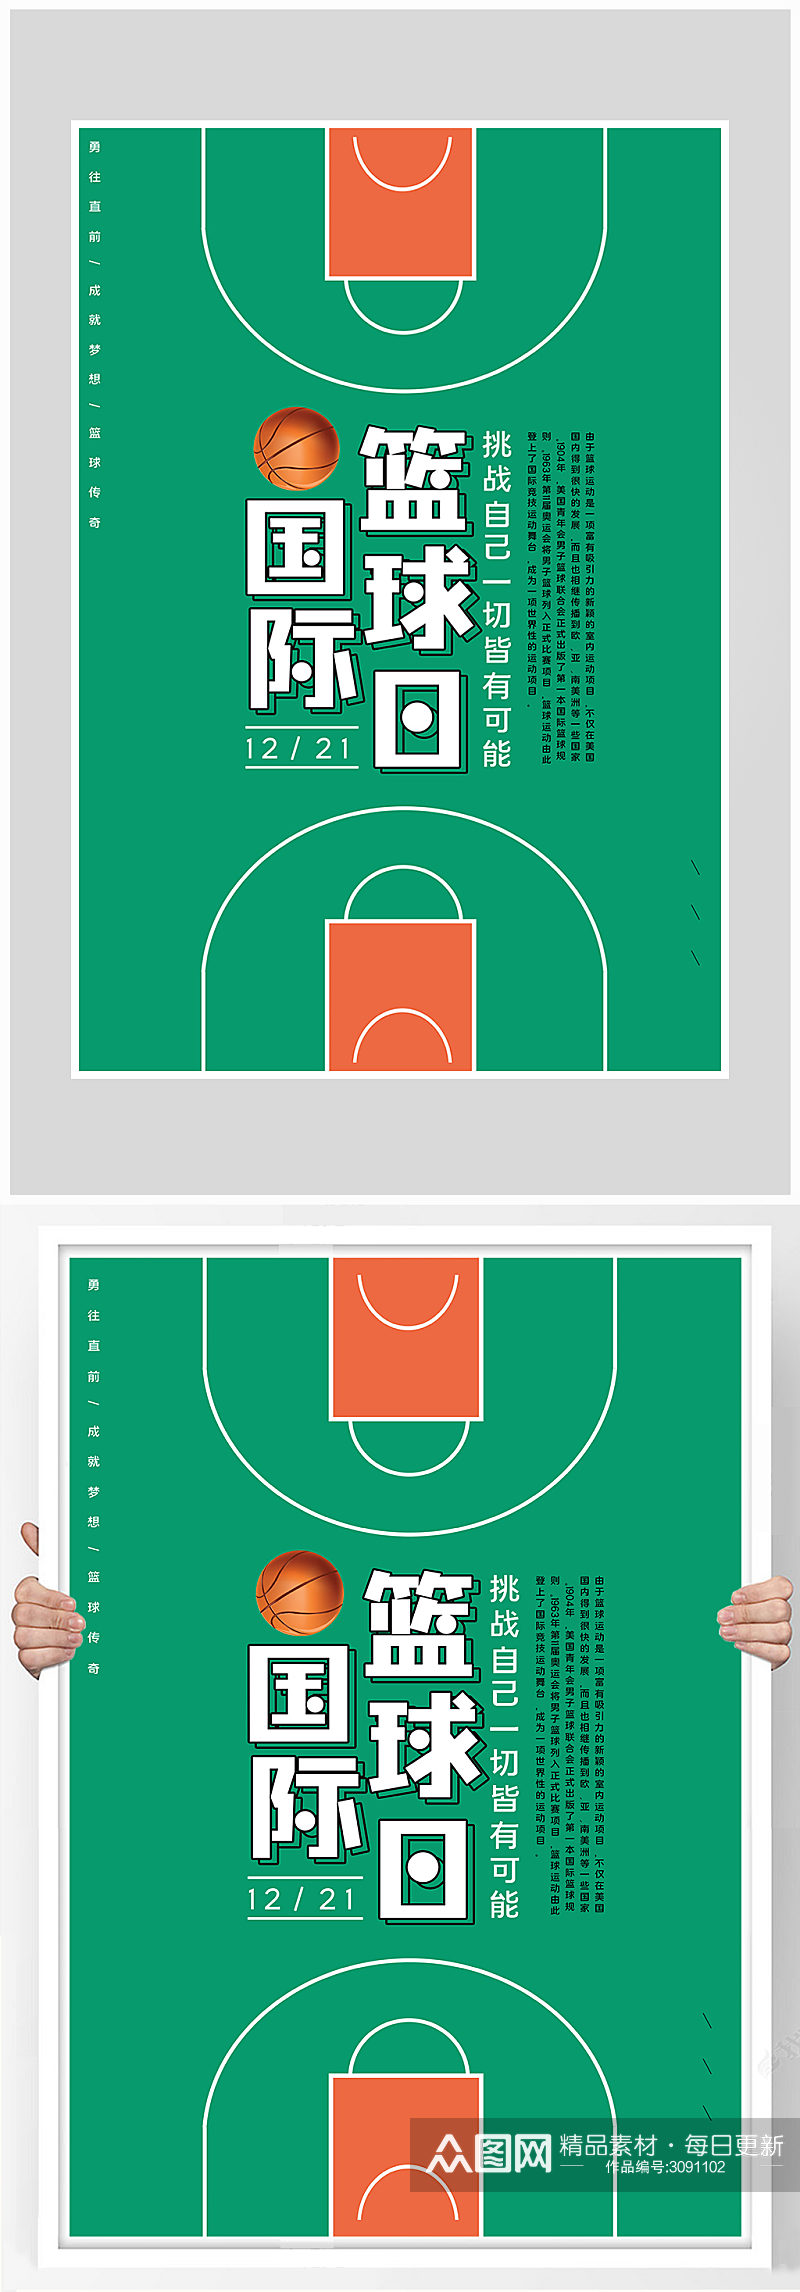 创意简约篮球运动海报设计素材